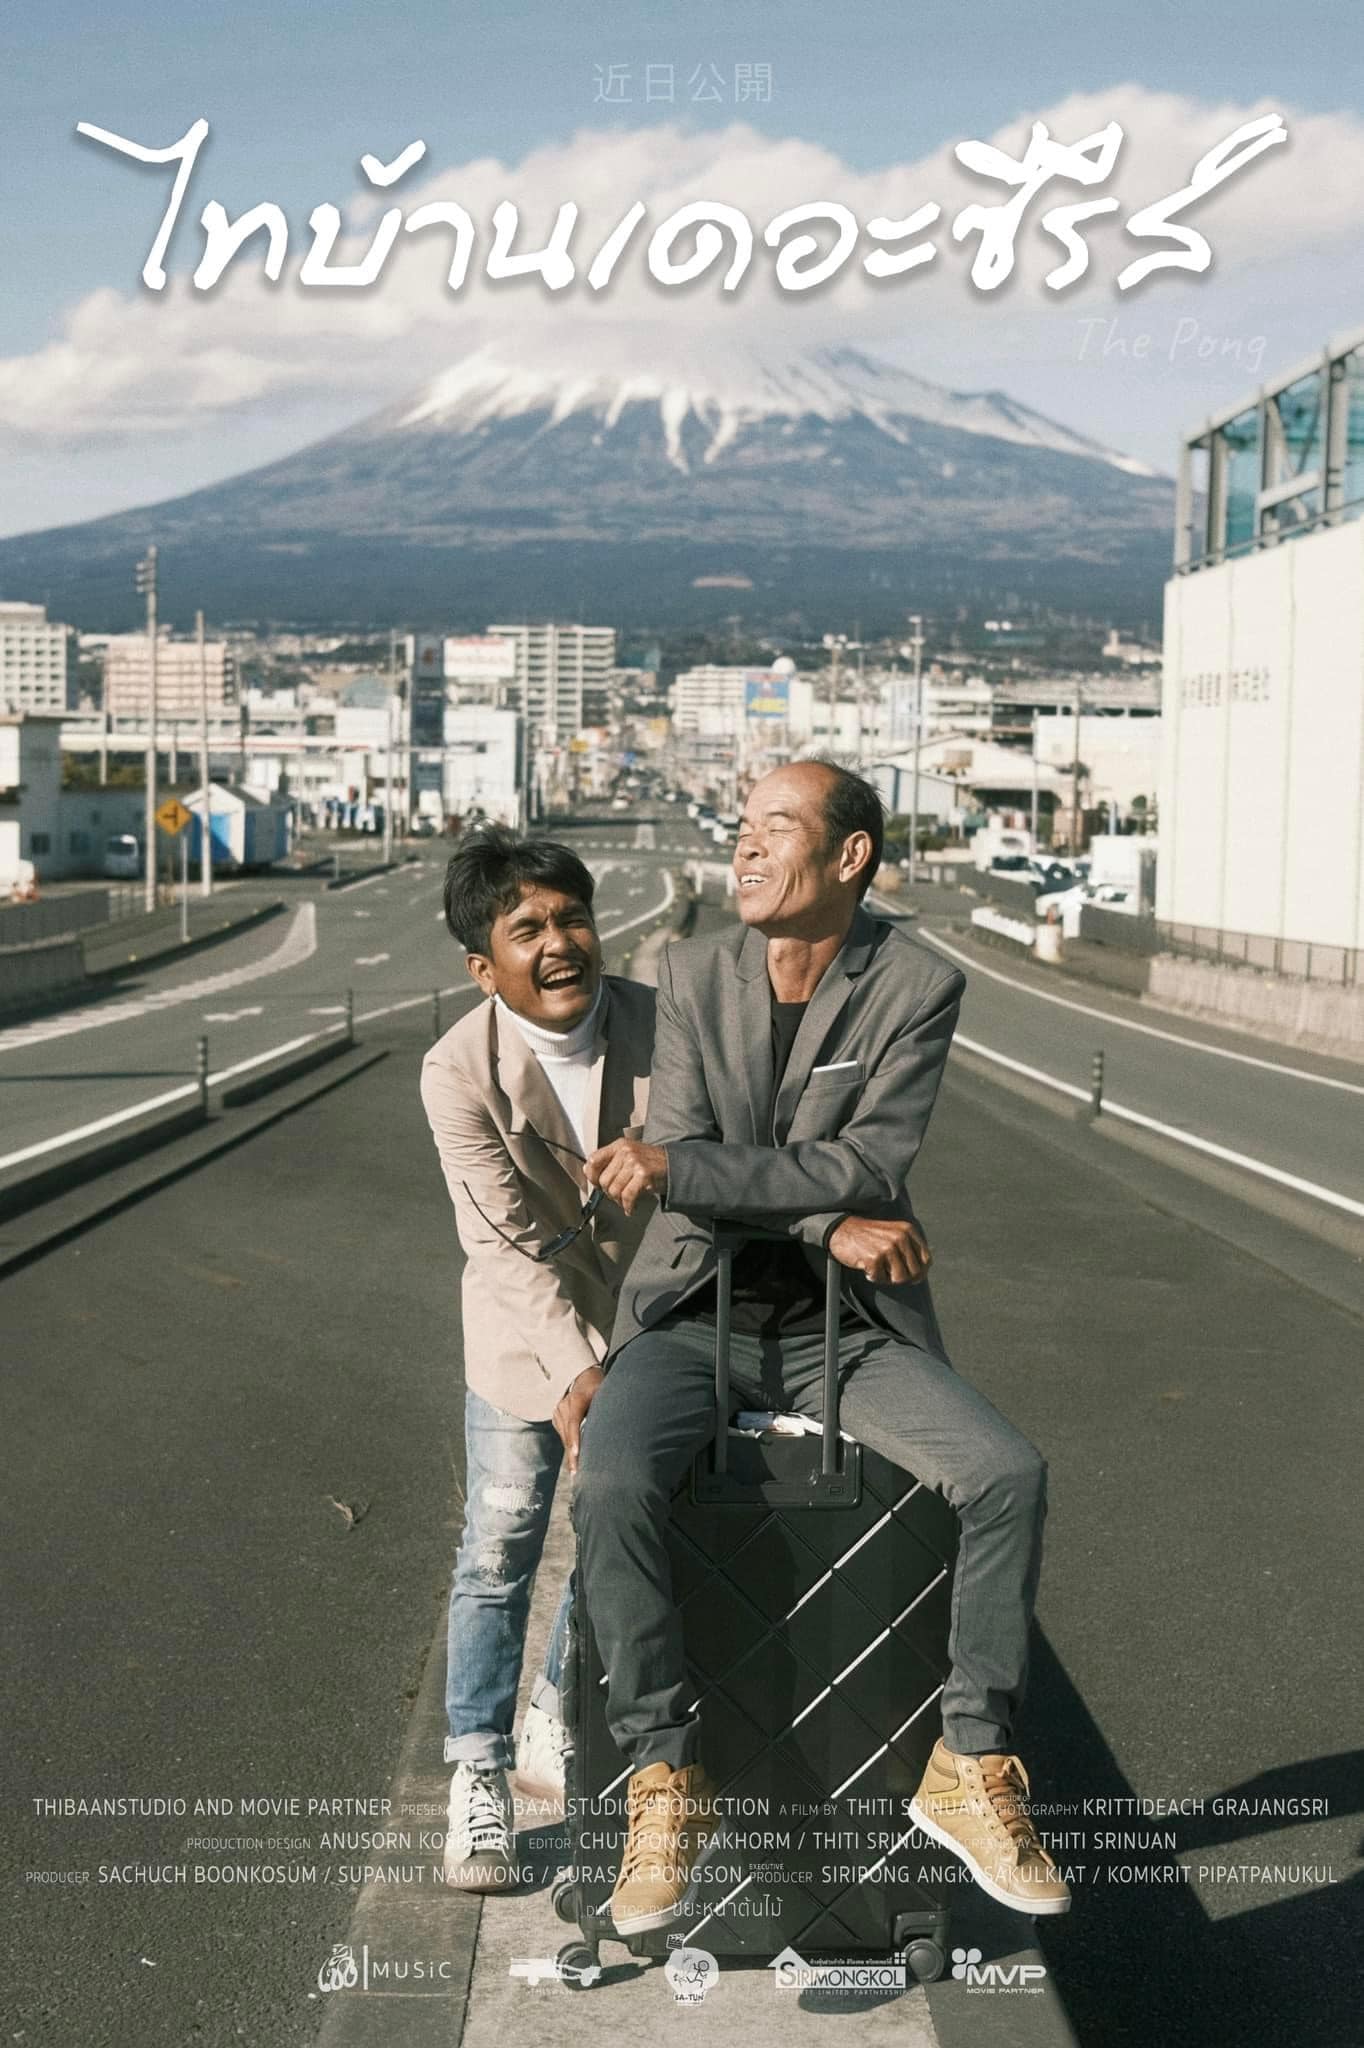 “ไทบ้าน เดอะซีรีส์ 3” ปล่อยภาพโปรโมตชุดแรก เตรียมเปิดร้านลาบที่ญี่ปุ่น